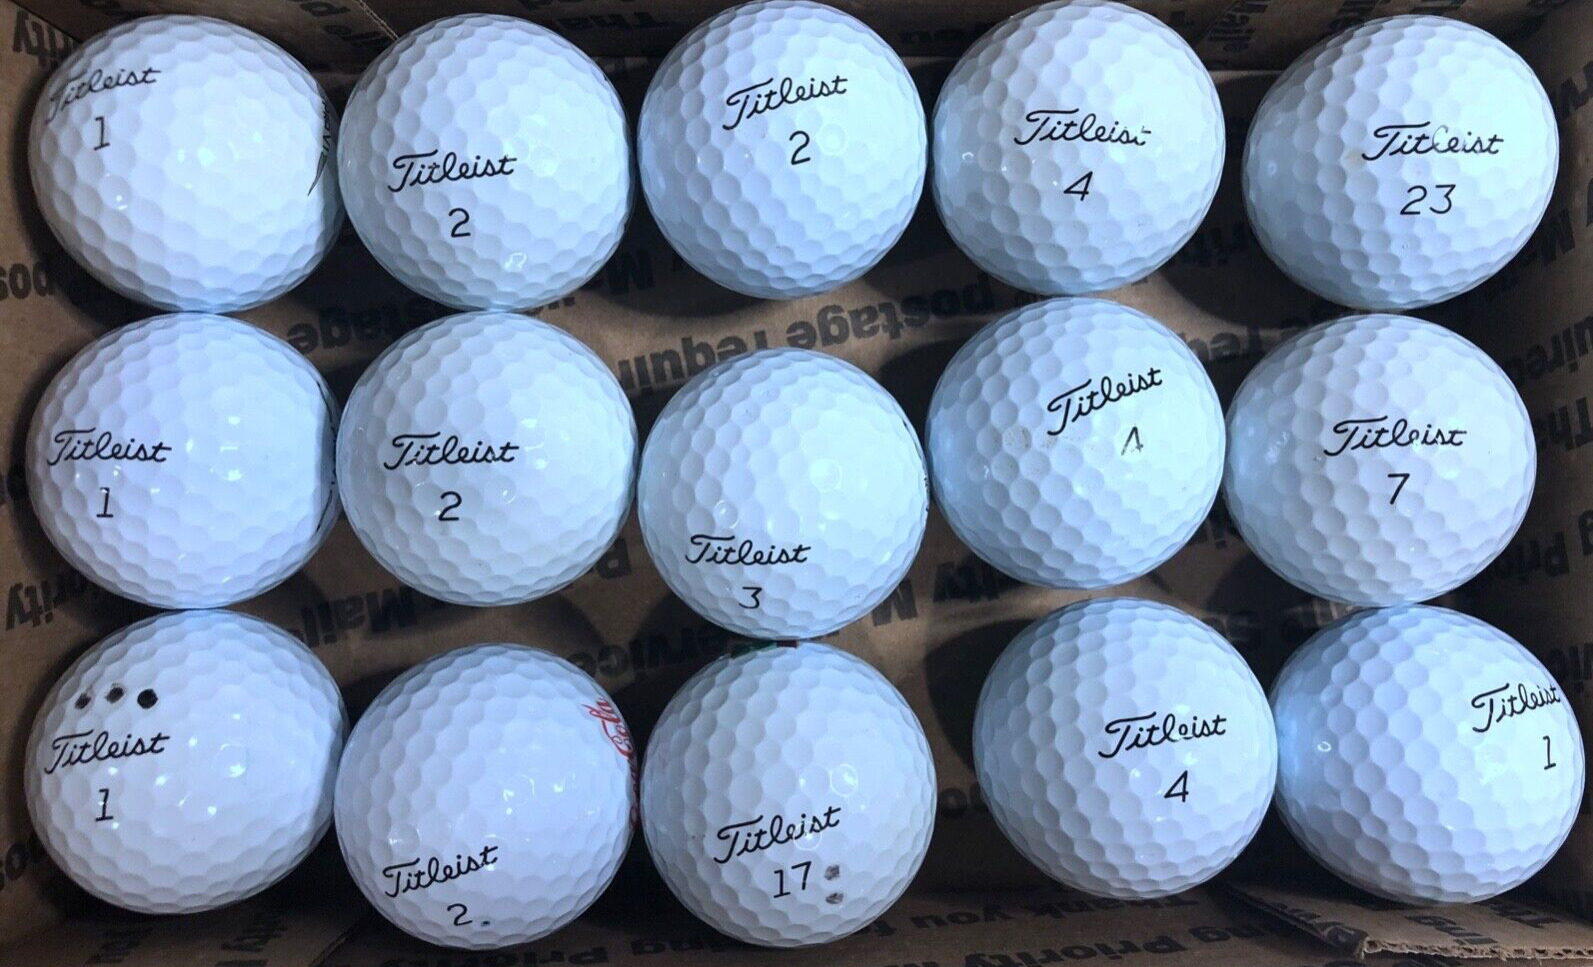 TITLEIST ProV1, 15 AAAA white golf balls